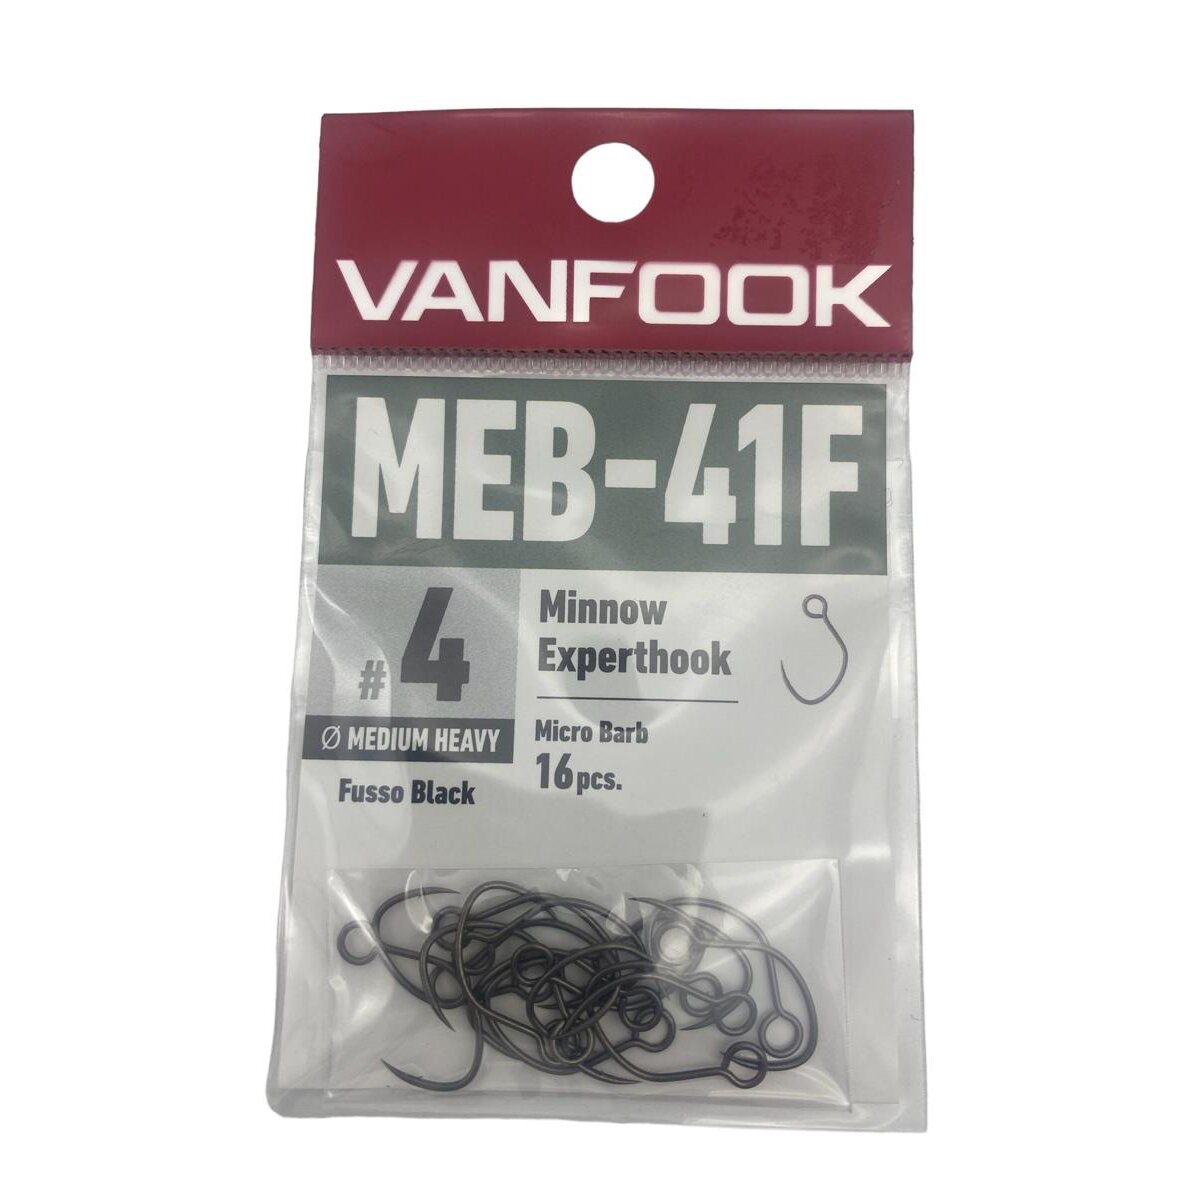 VanFook MEB-41F #4 -  Der Online-Shop rund ums Thema  modernes Forellenangeln, 7,95 €